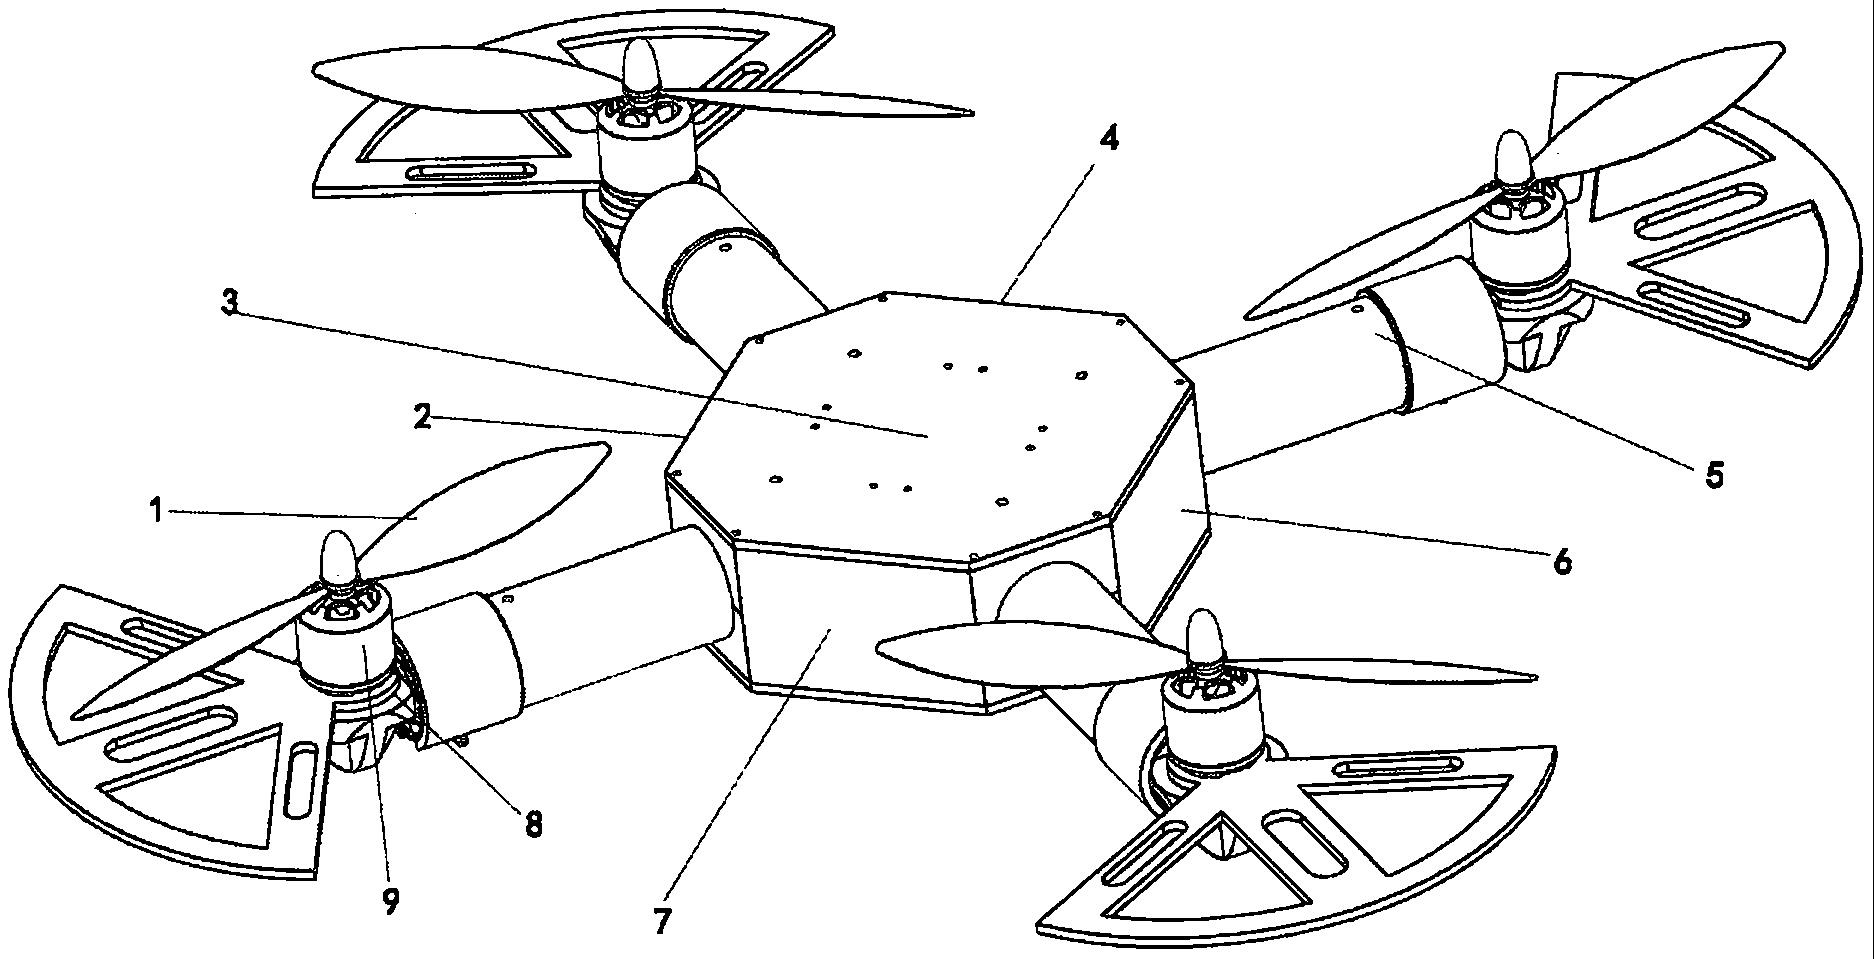 可翻转式四旋翼无人机的制作方法